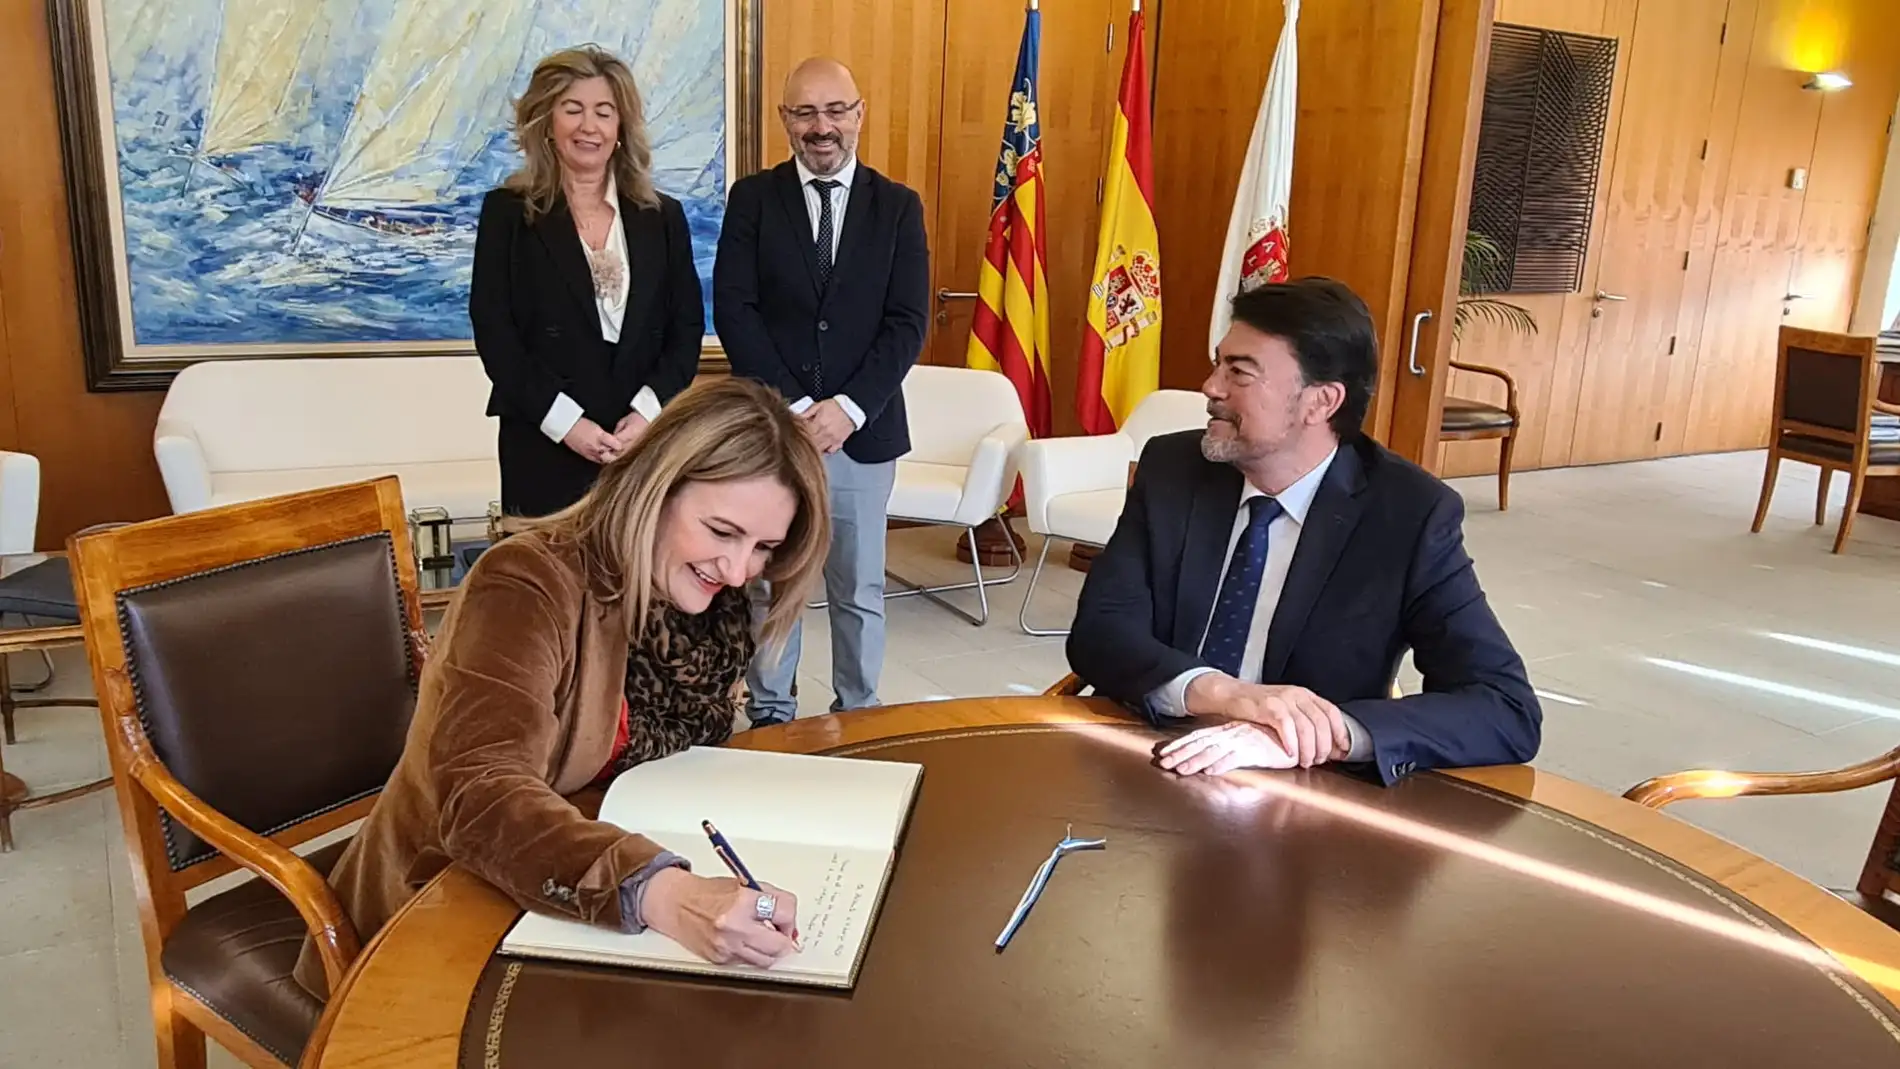 La consellera Nuria Montes firma en el libro de honor del ayuntamiento ante el alcalde Luis Barcala